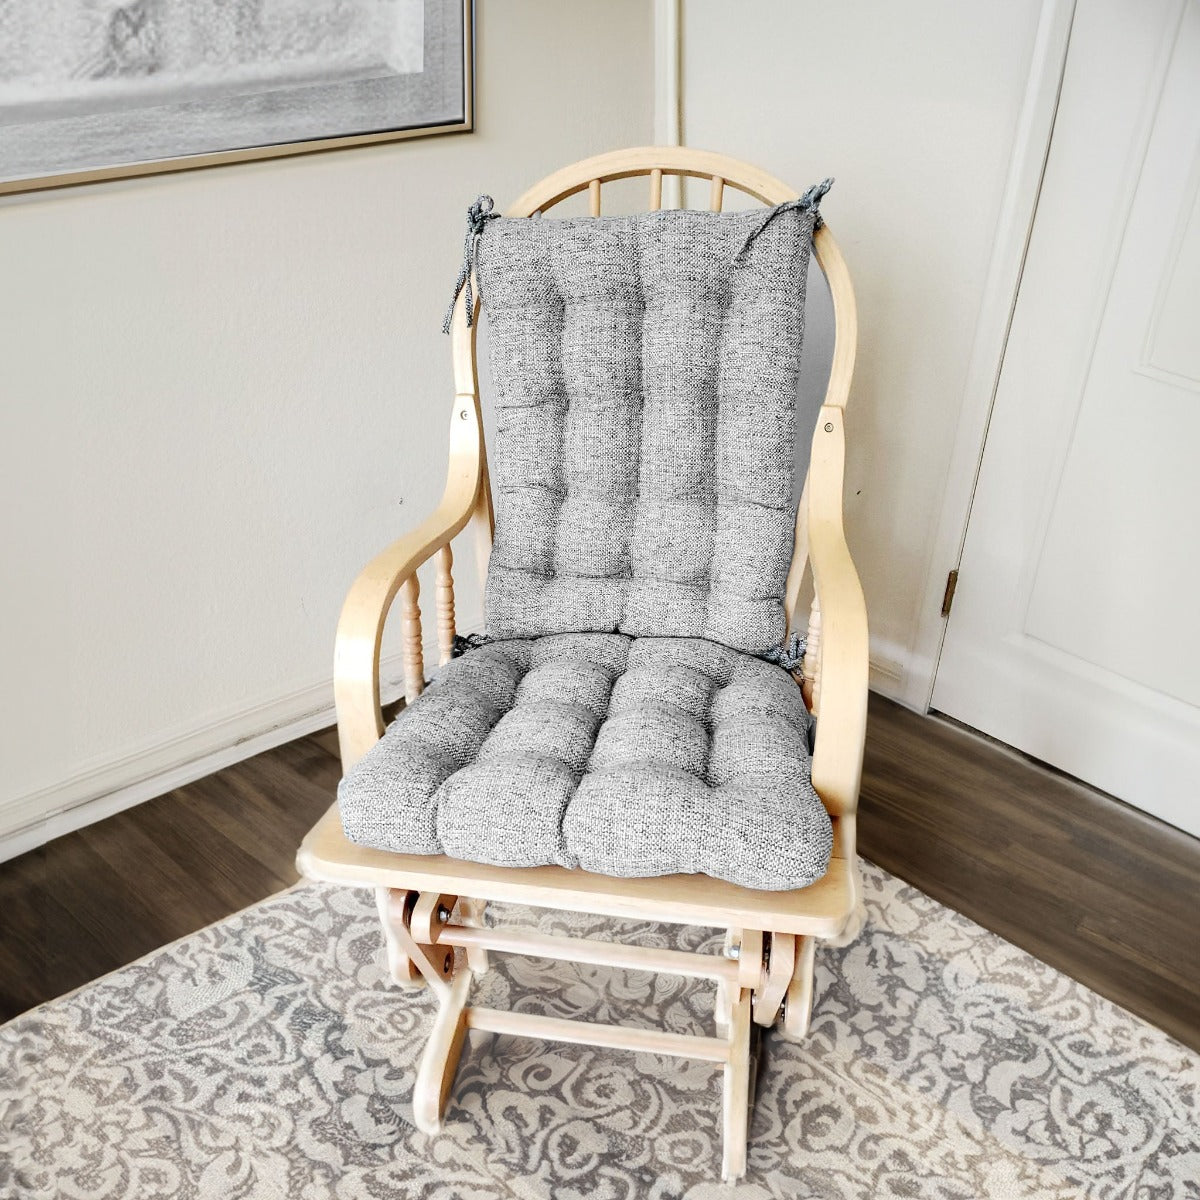 Brisbane Silver Grey Rocking Chair Cushions - Latex Foam - Barnett Home Décor - Silver & Grey